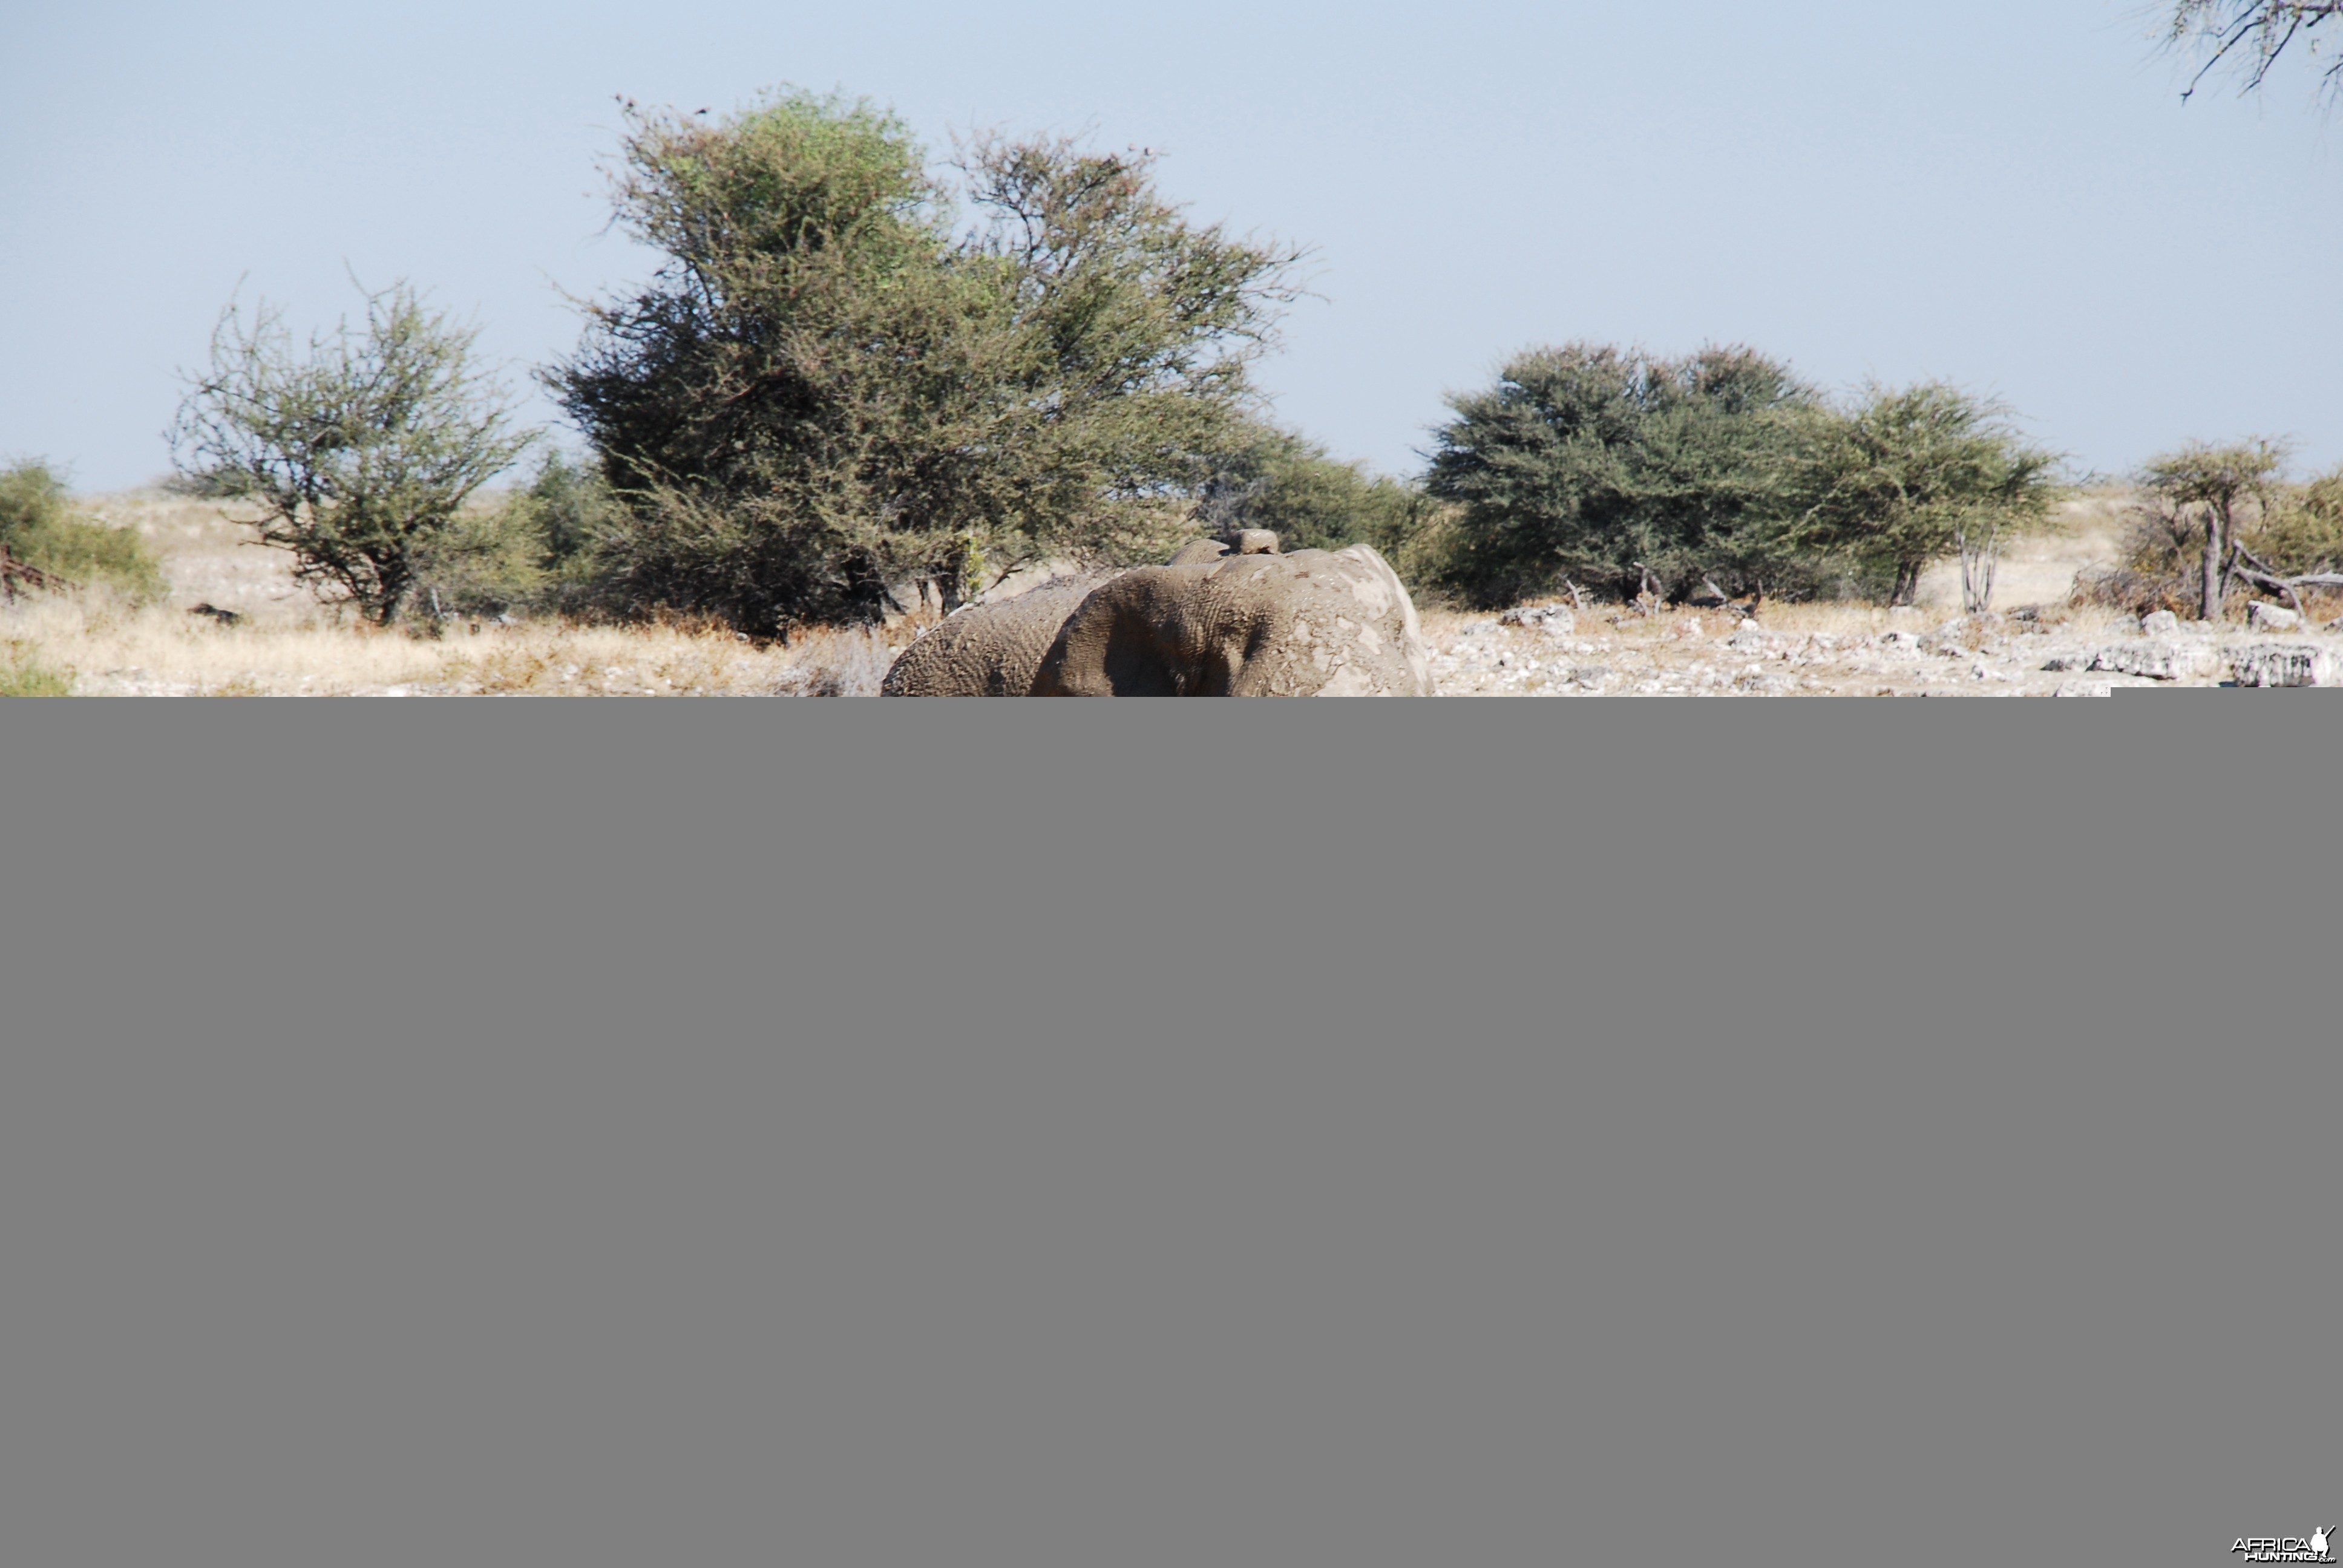 Elephant at Etosha Namibia